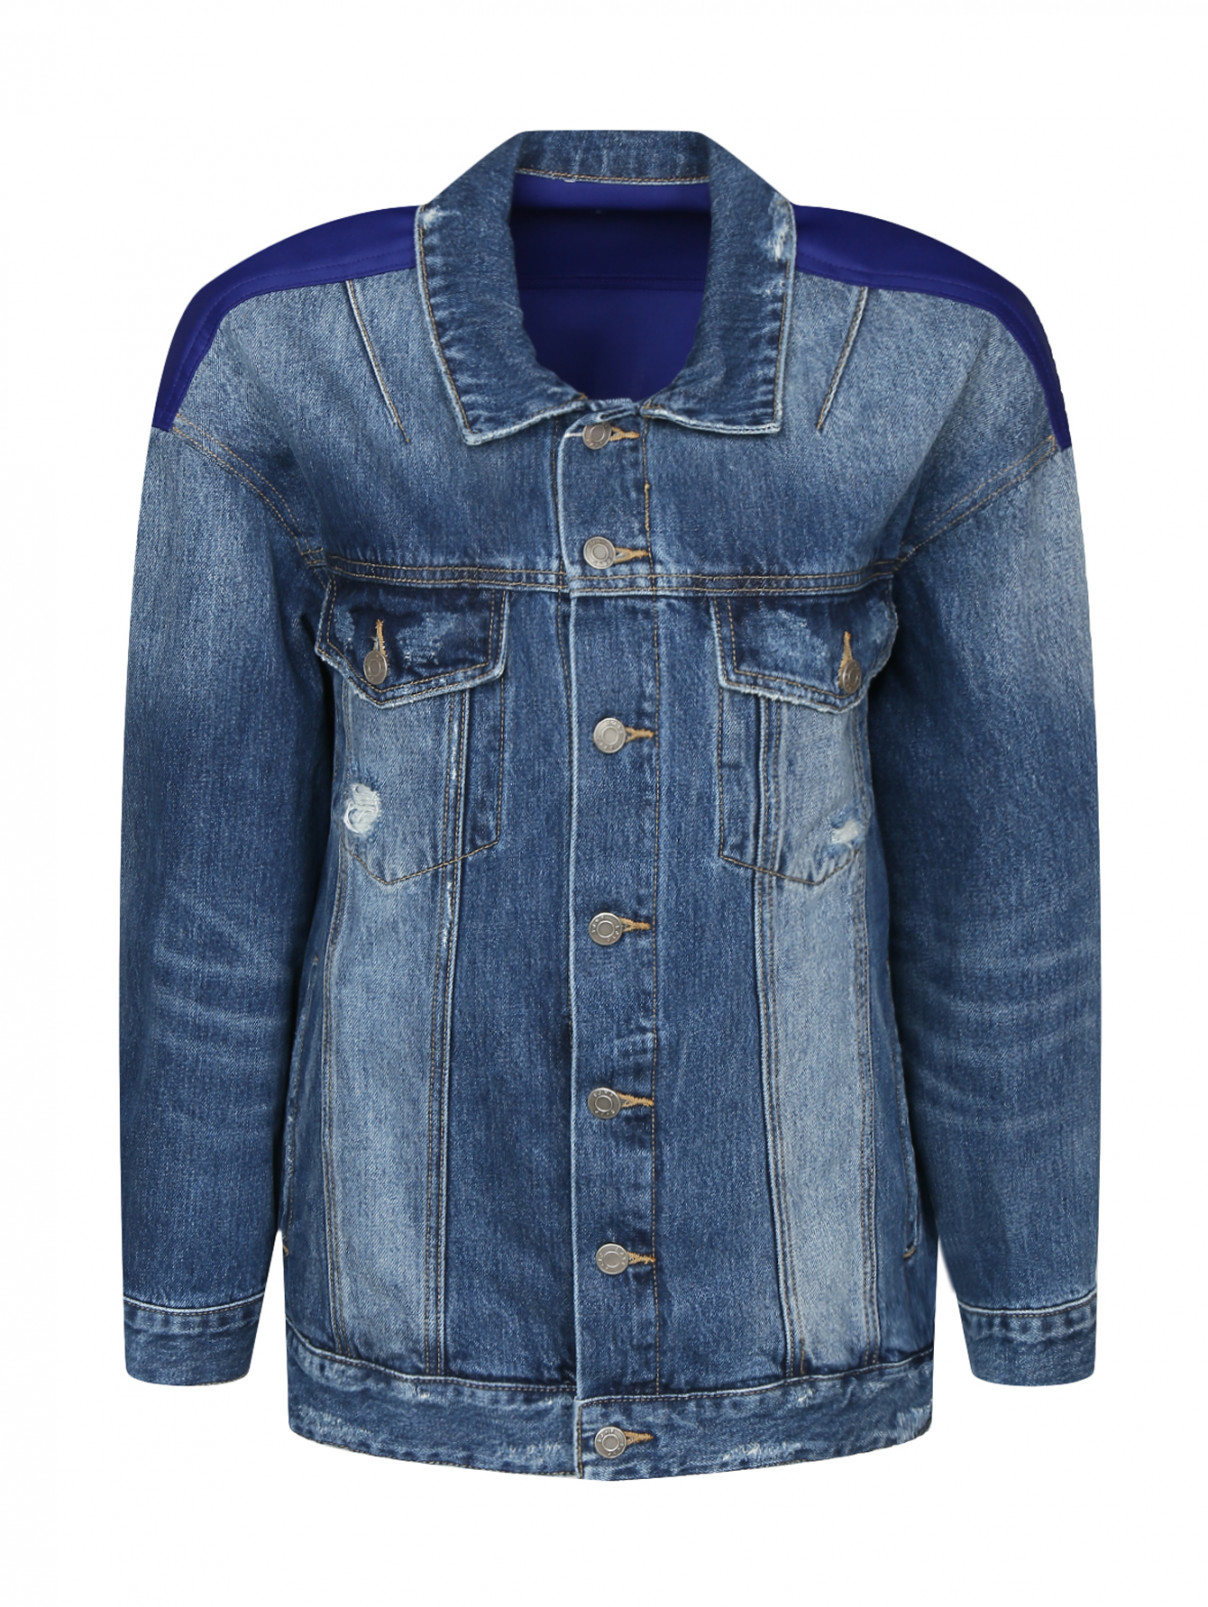 Удлиненная джинсовая куртка с принтом на спине Sjyp  –  Общий вид  – Цвет:  Синий